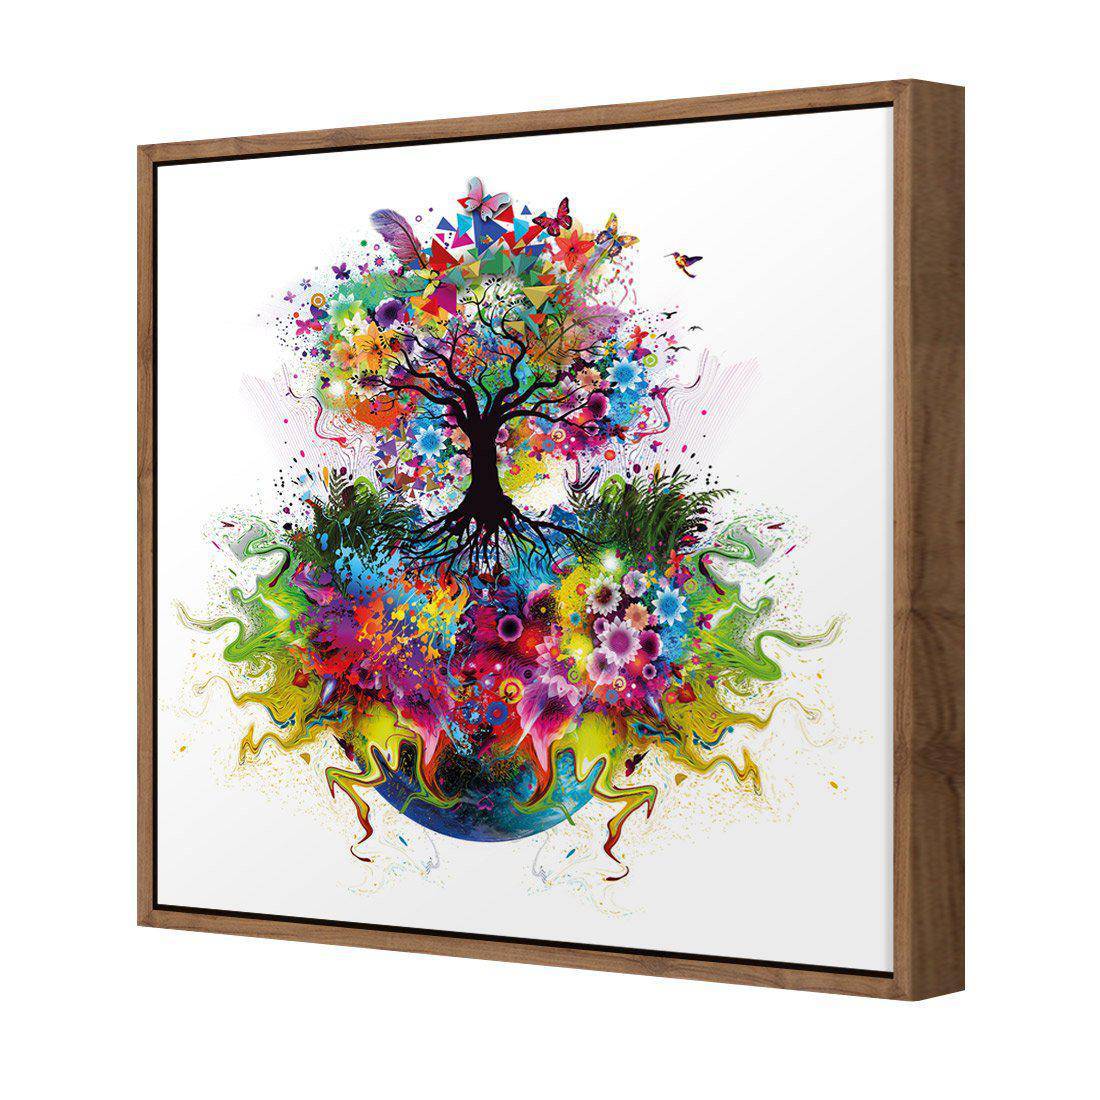 Flower Power Canvas Art-Canvas-Wall Art Designs-30x30cm-Canvas - Natural Frame-Wall Art Designs